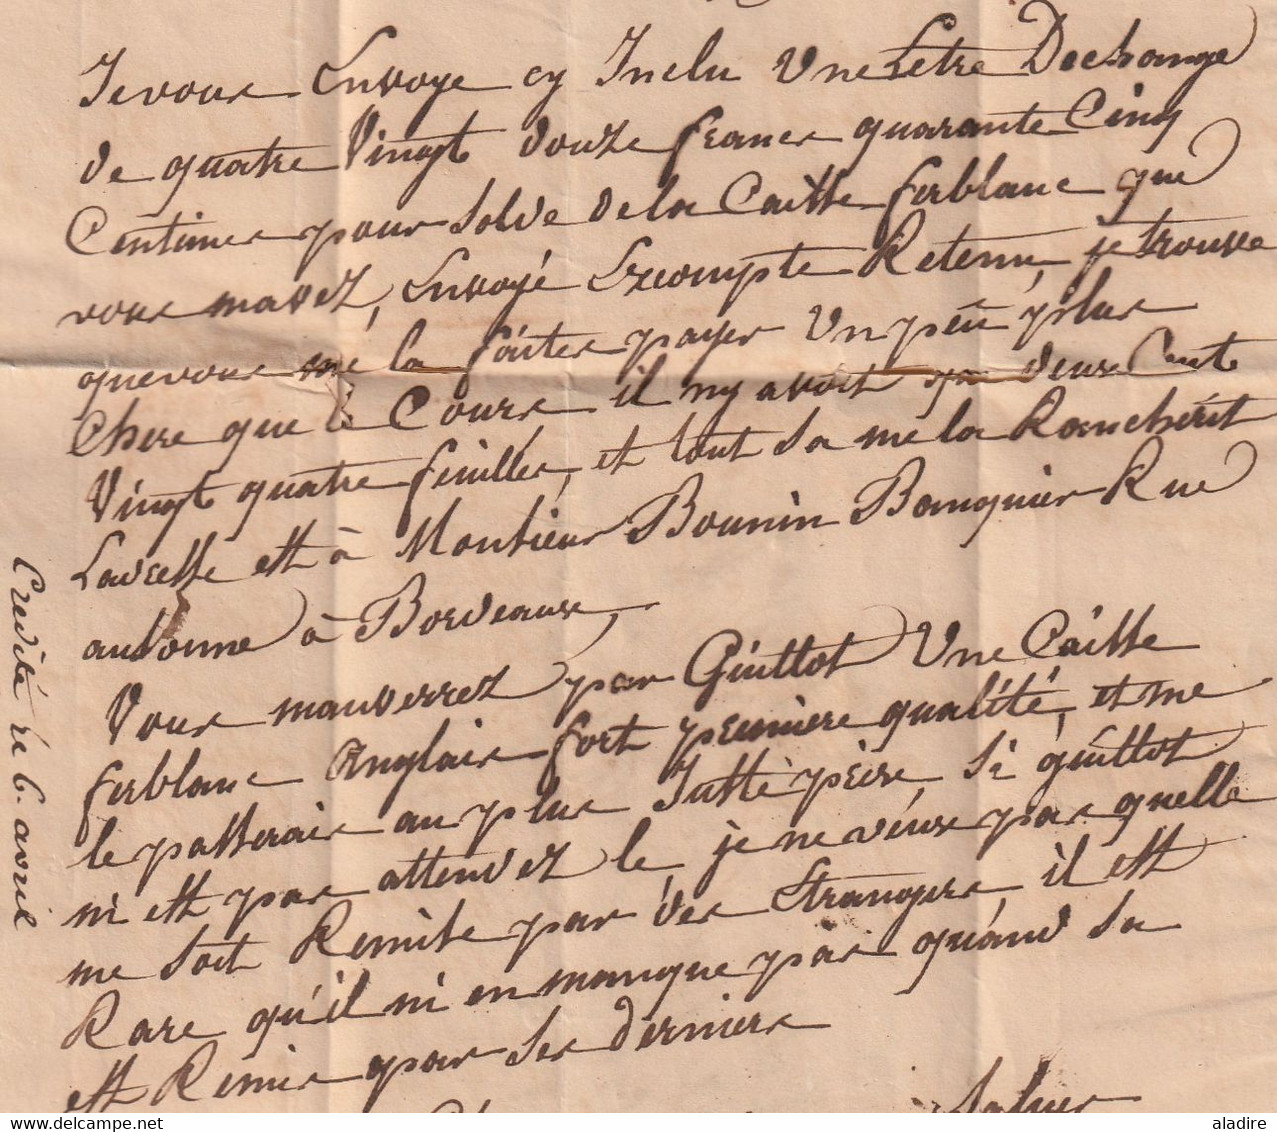 1830 - Marque postale 45 TONNEINS, Lot et Garonne et dateur sur Lettre pliée vers Bordeaux - dateur en arrivée